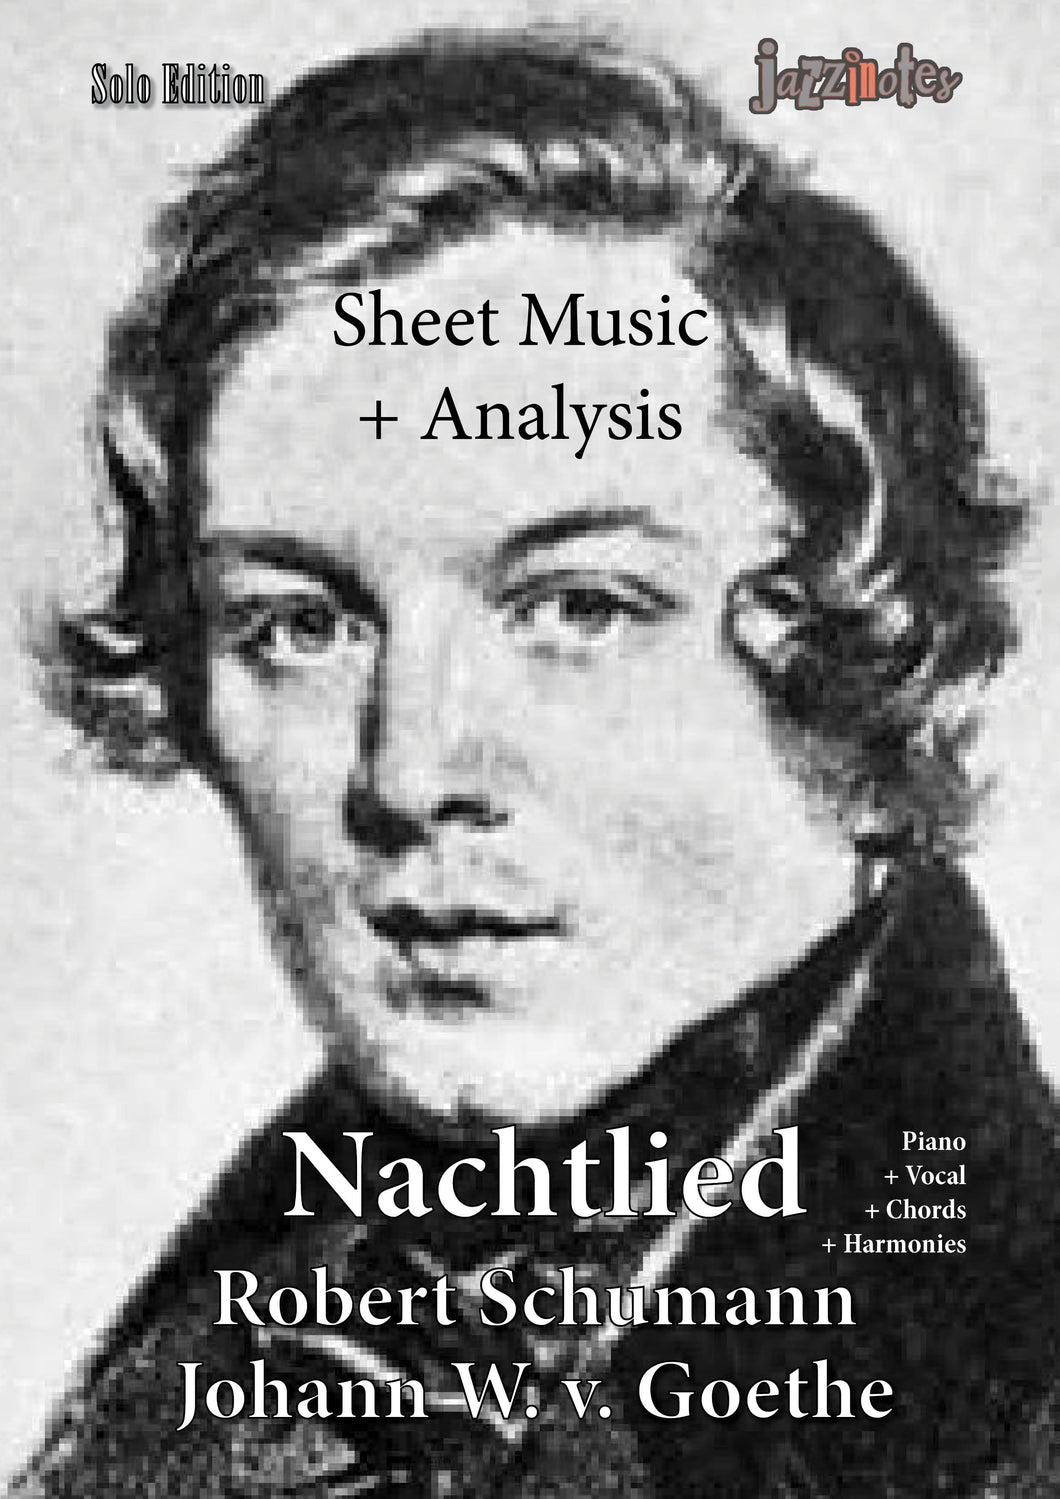 Schumann, Robert: Nachtlied - Musiknoten Download und Analyse